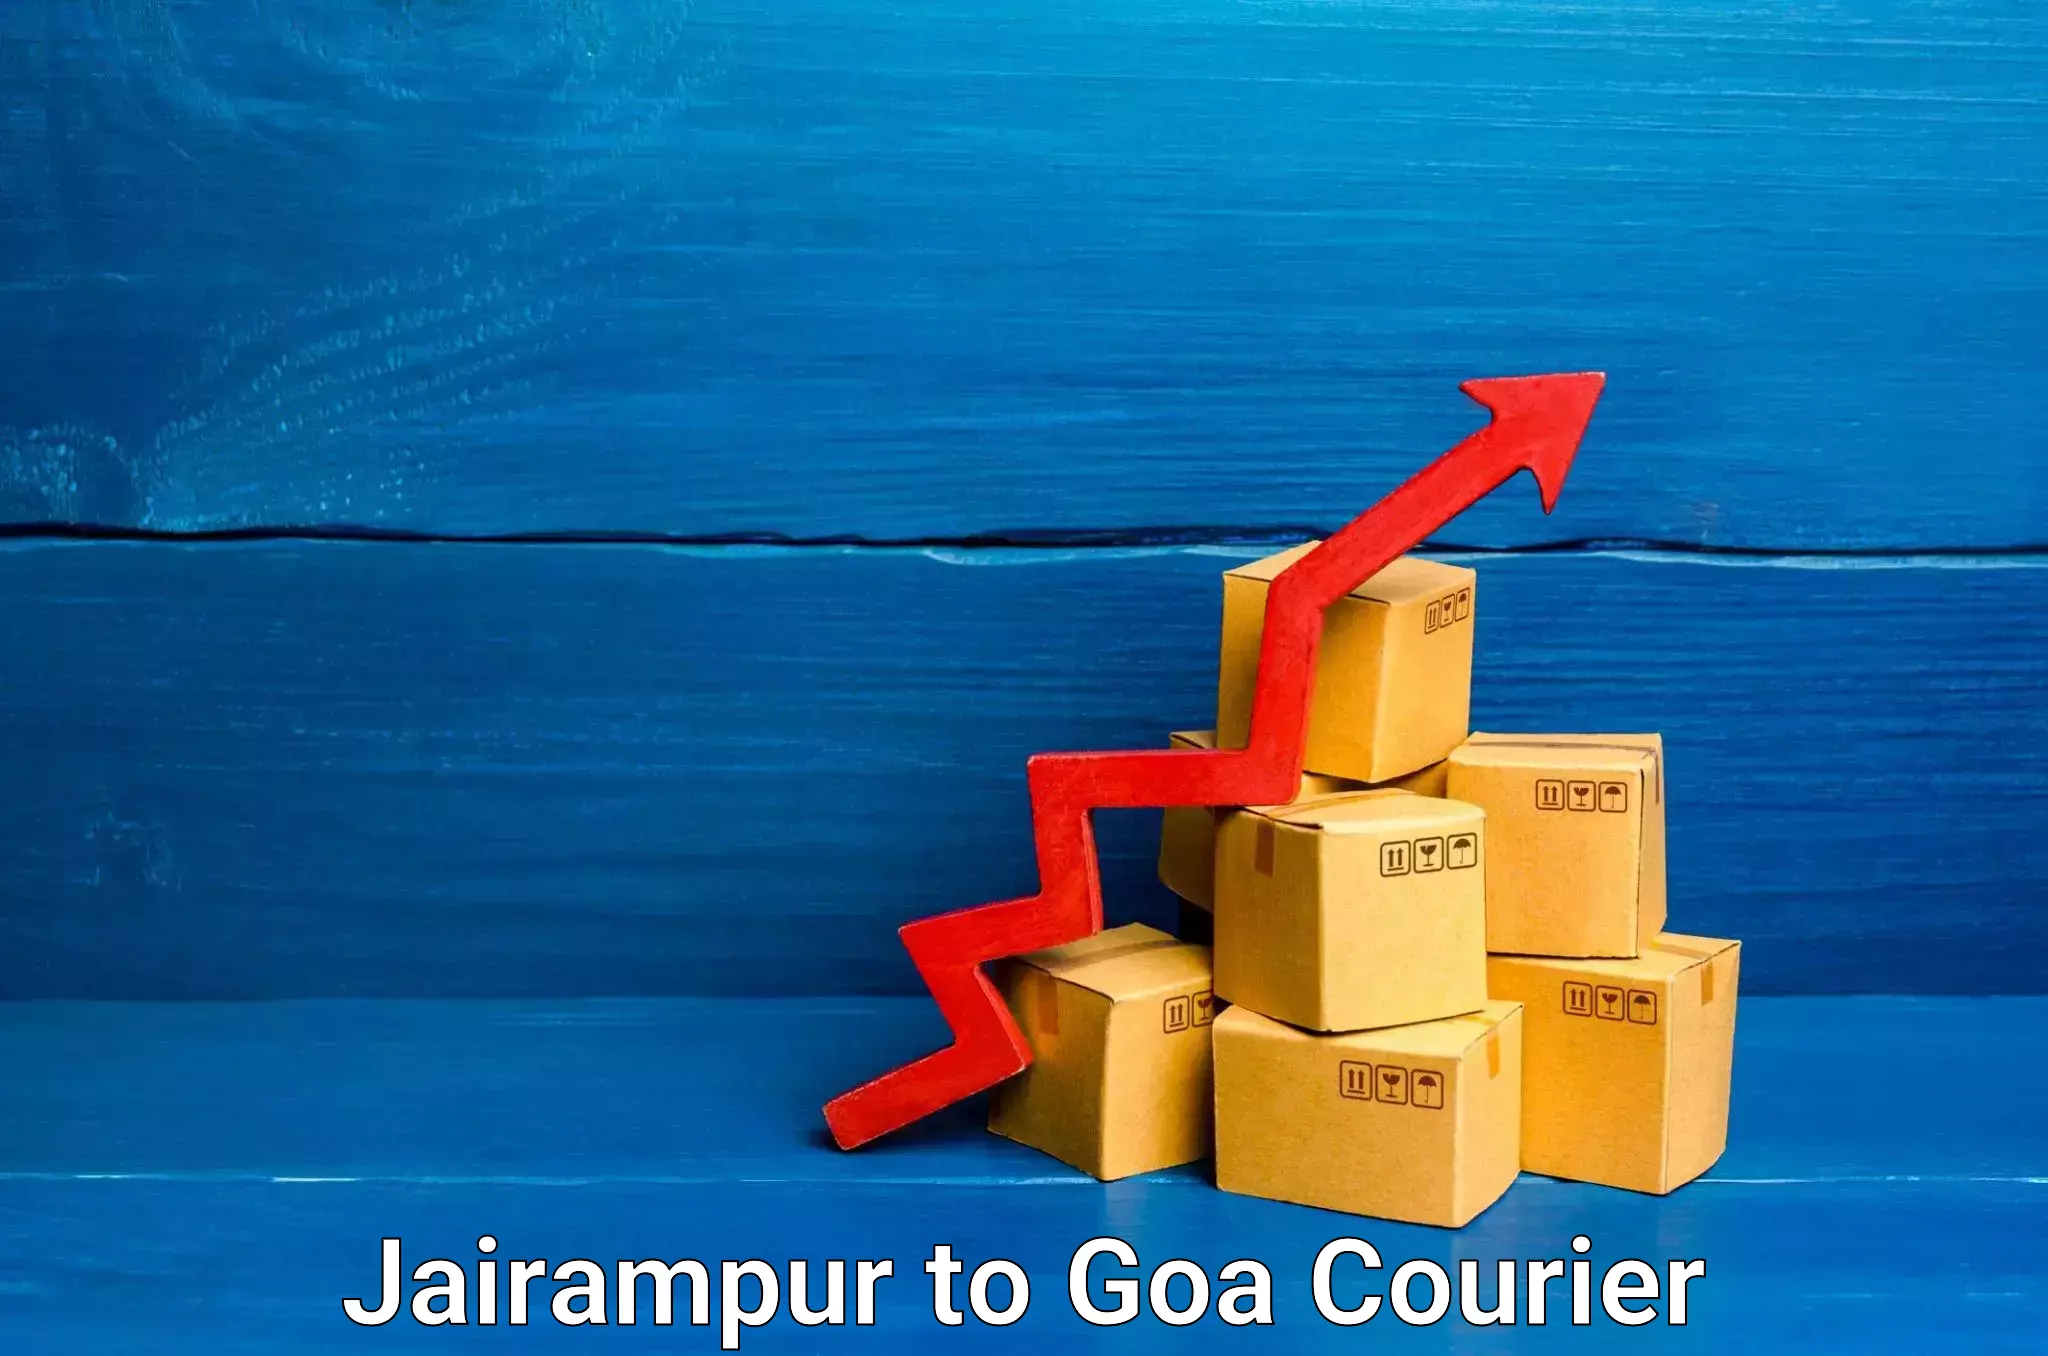 Courier service comparison Jairampur to Goa